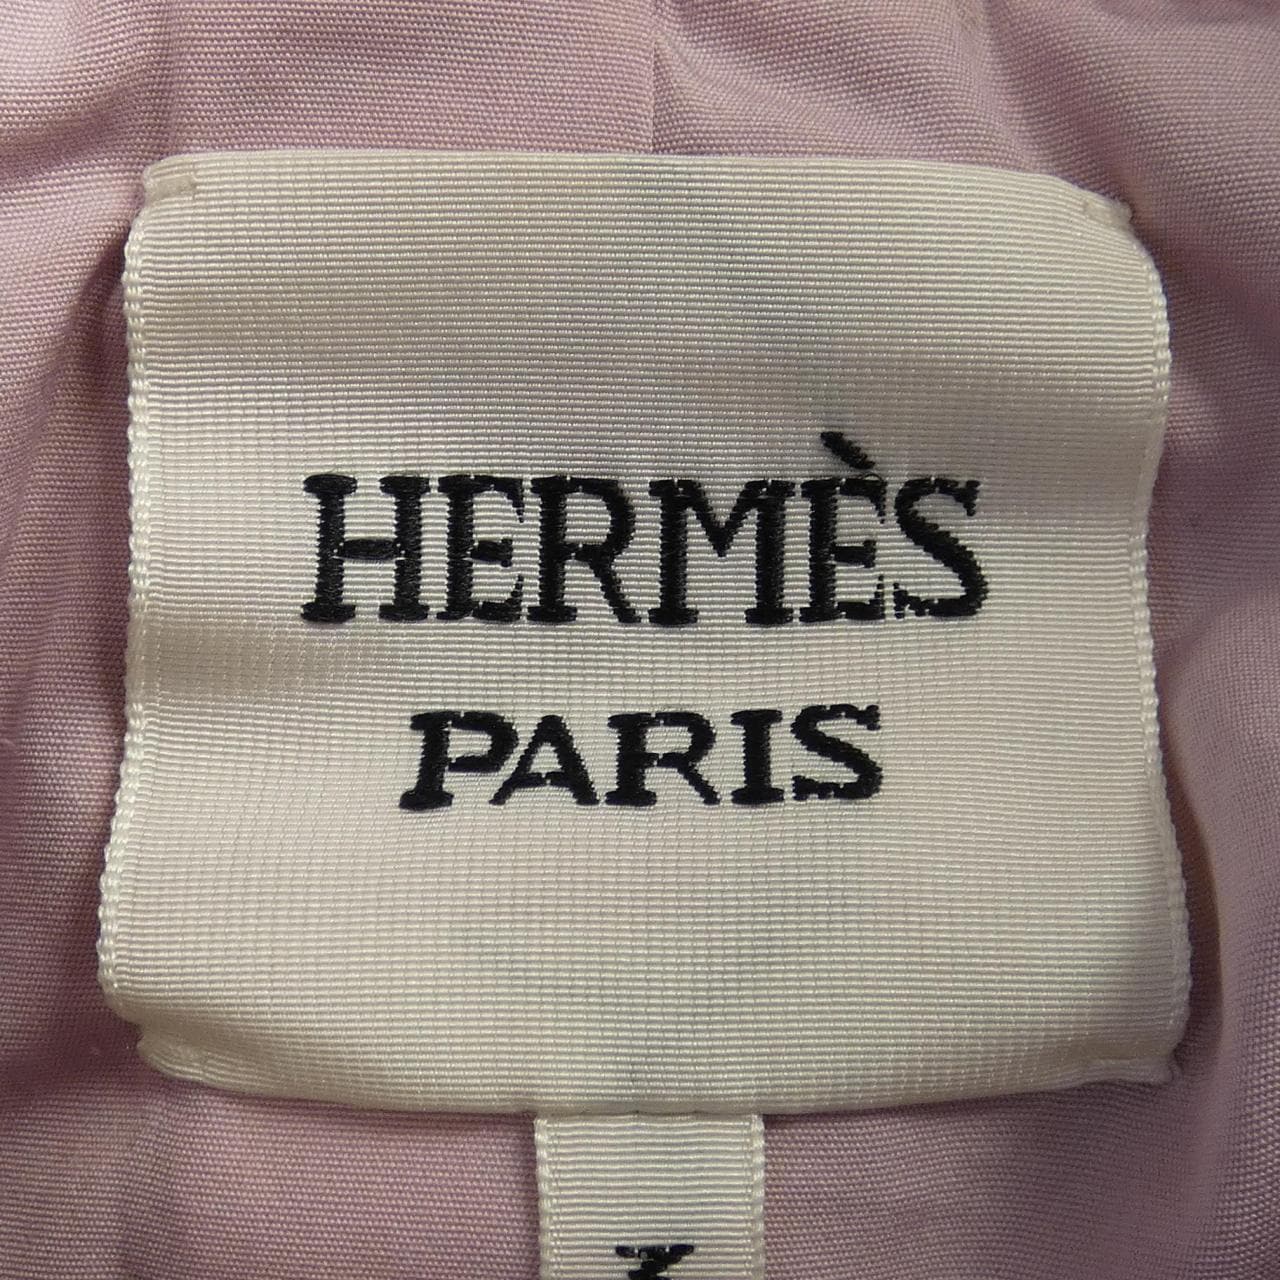 HERMES愛馬仕皮夾克